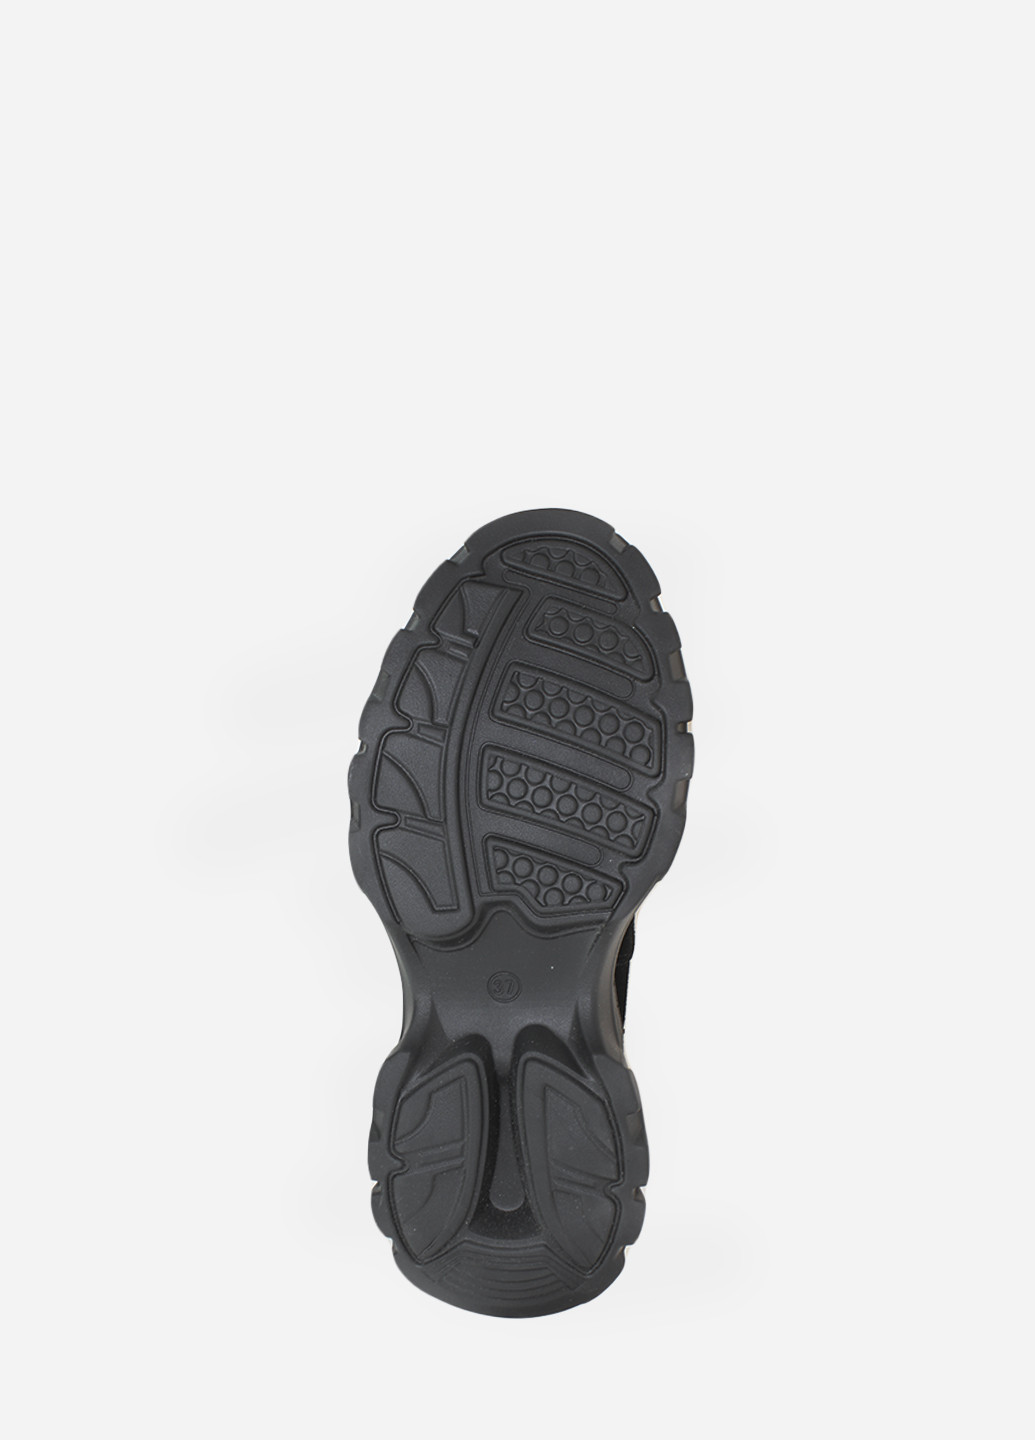 Зимние ботинки rv5673-11 черный Vito Villini из натуральной замши